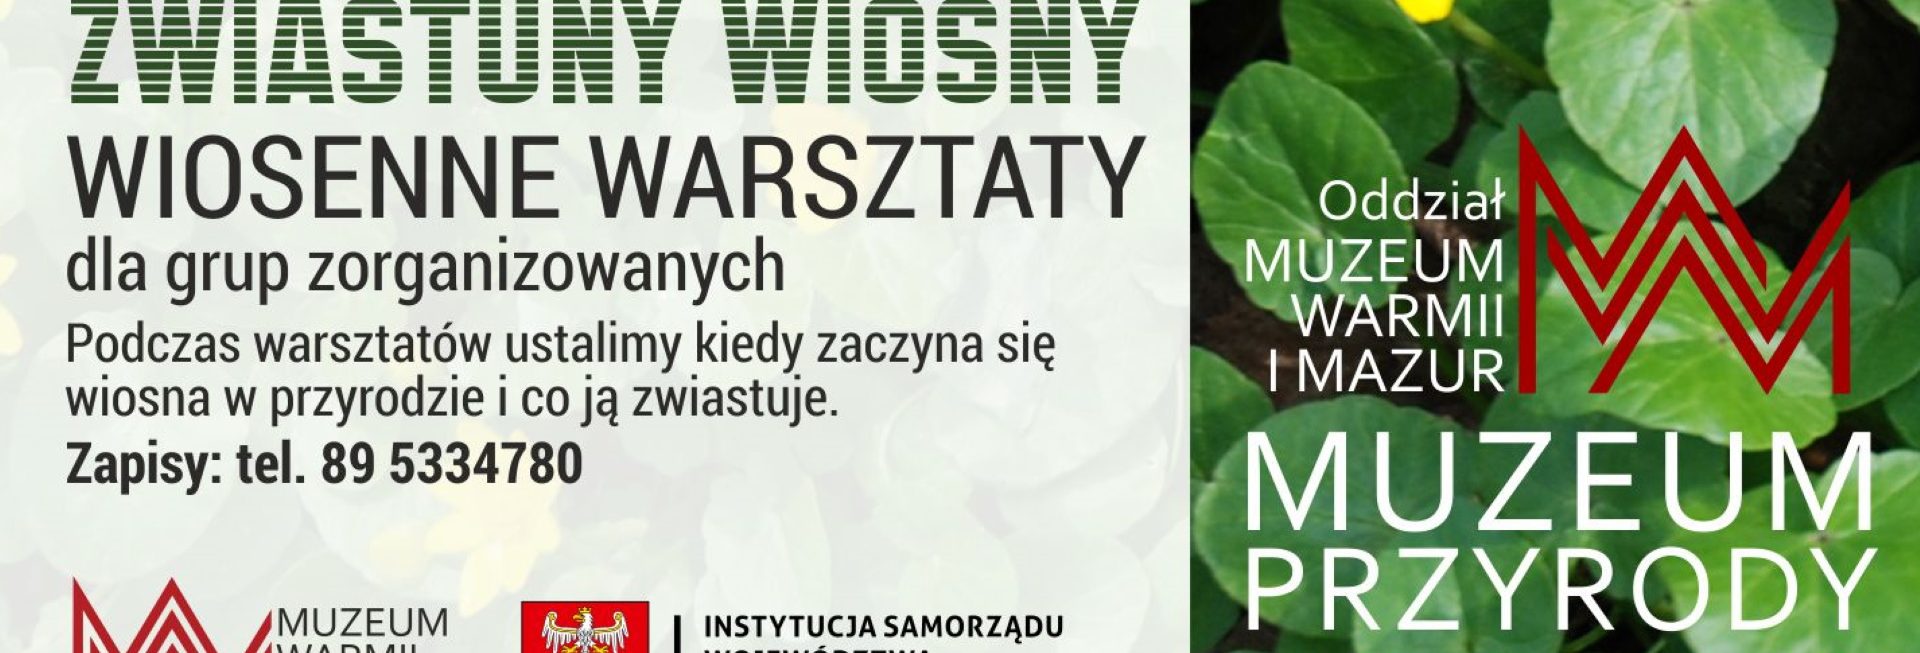 Plakat zapraszający w dniach 1-31 marca 2023 r. do Muzeum Przyrody w Olsztynie na Wiosenne warsztaty "Zwiastuny wiosny" Muzeum Przyrody Olsztyn 2023.